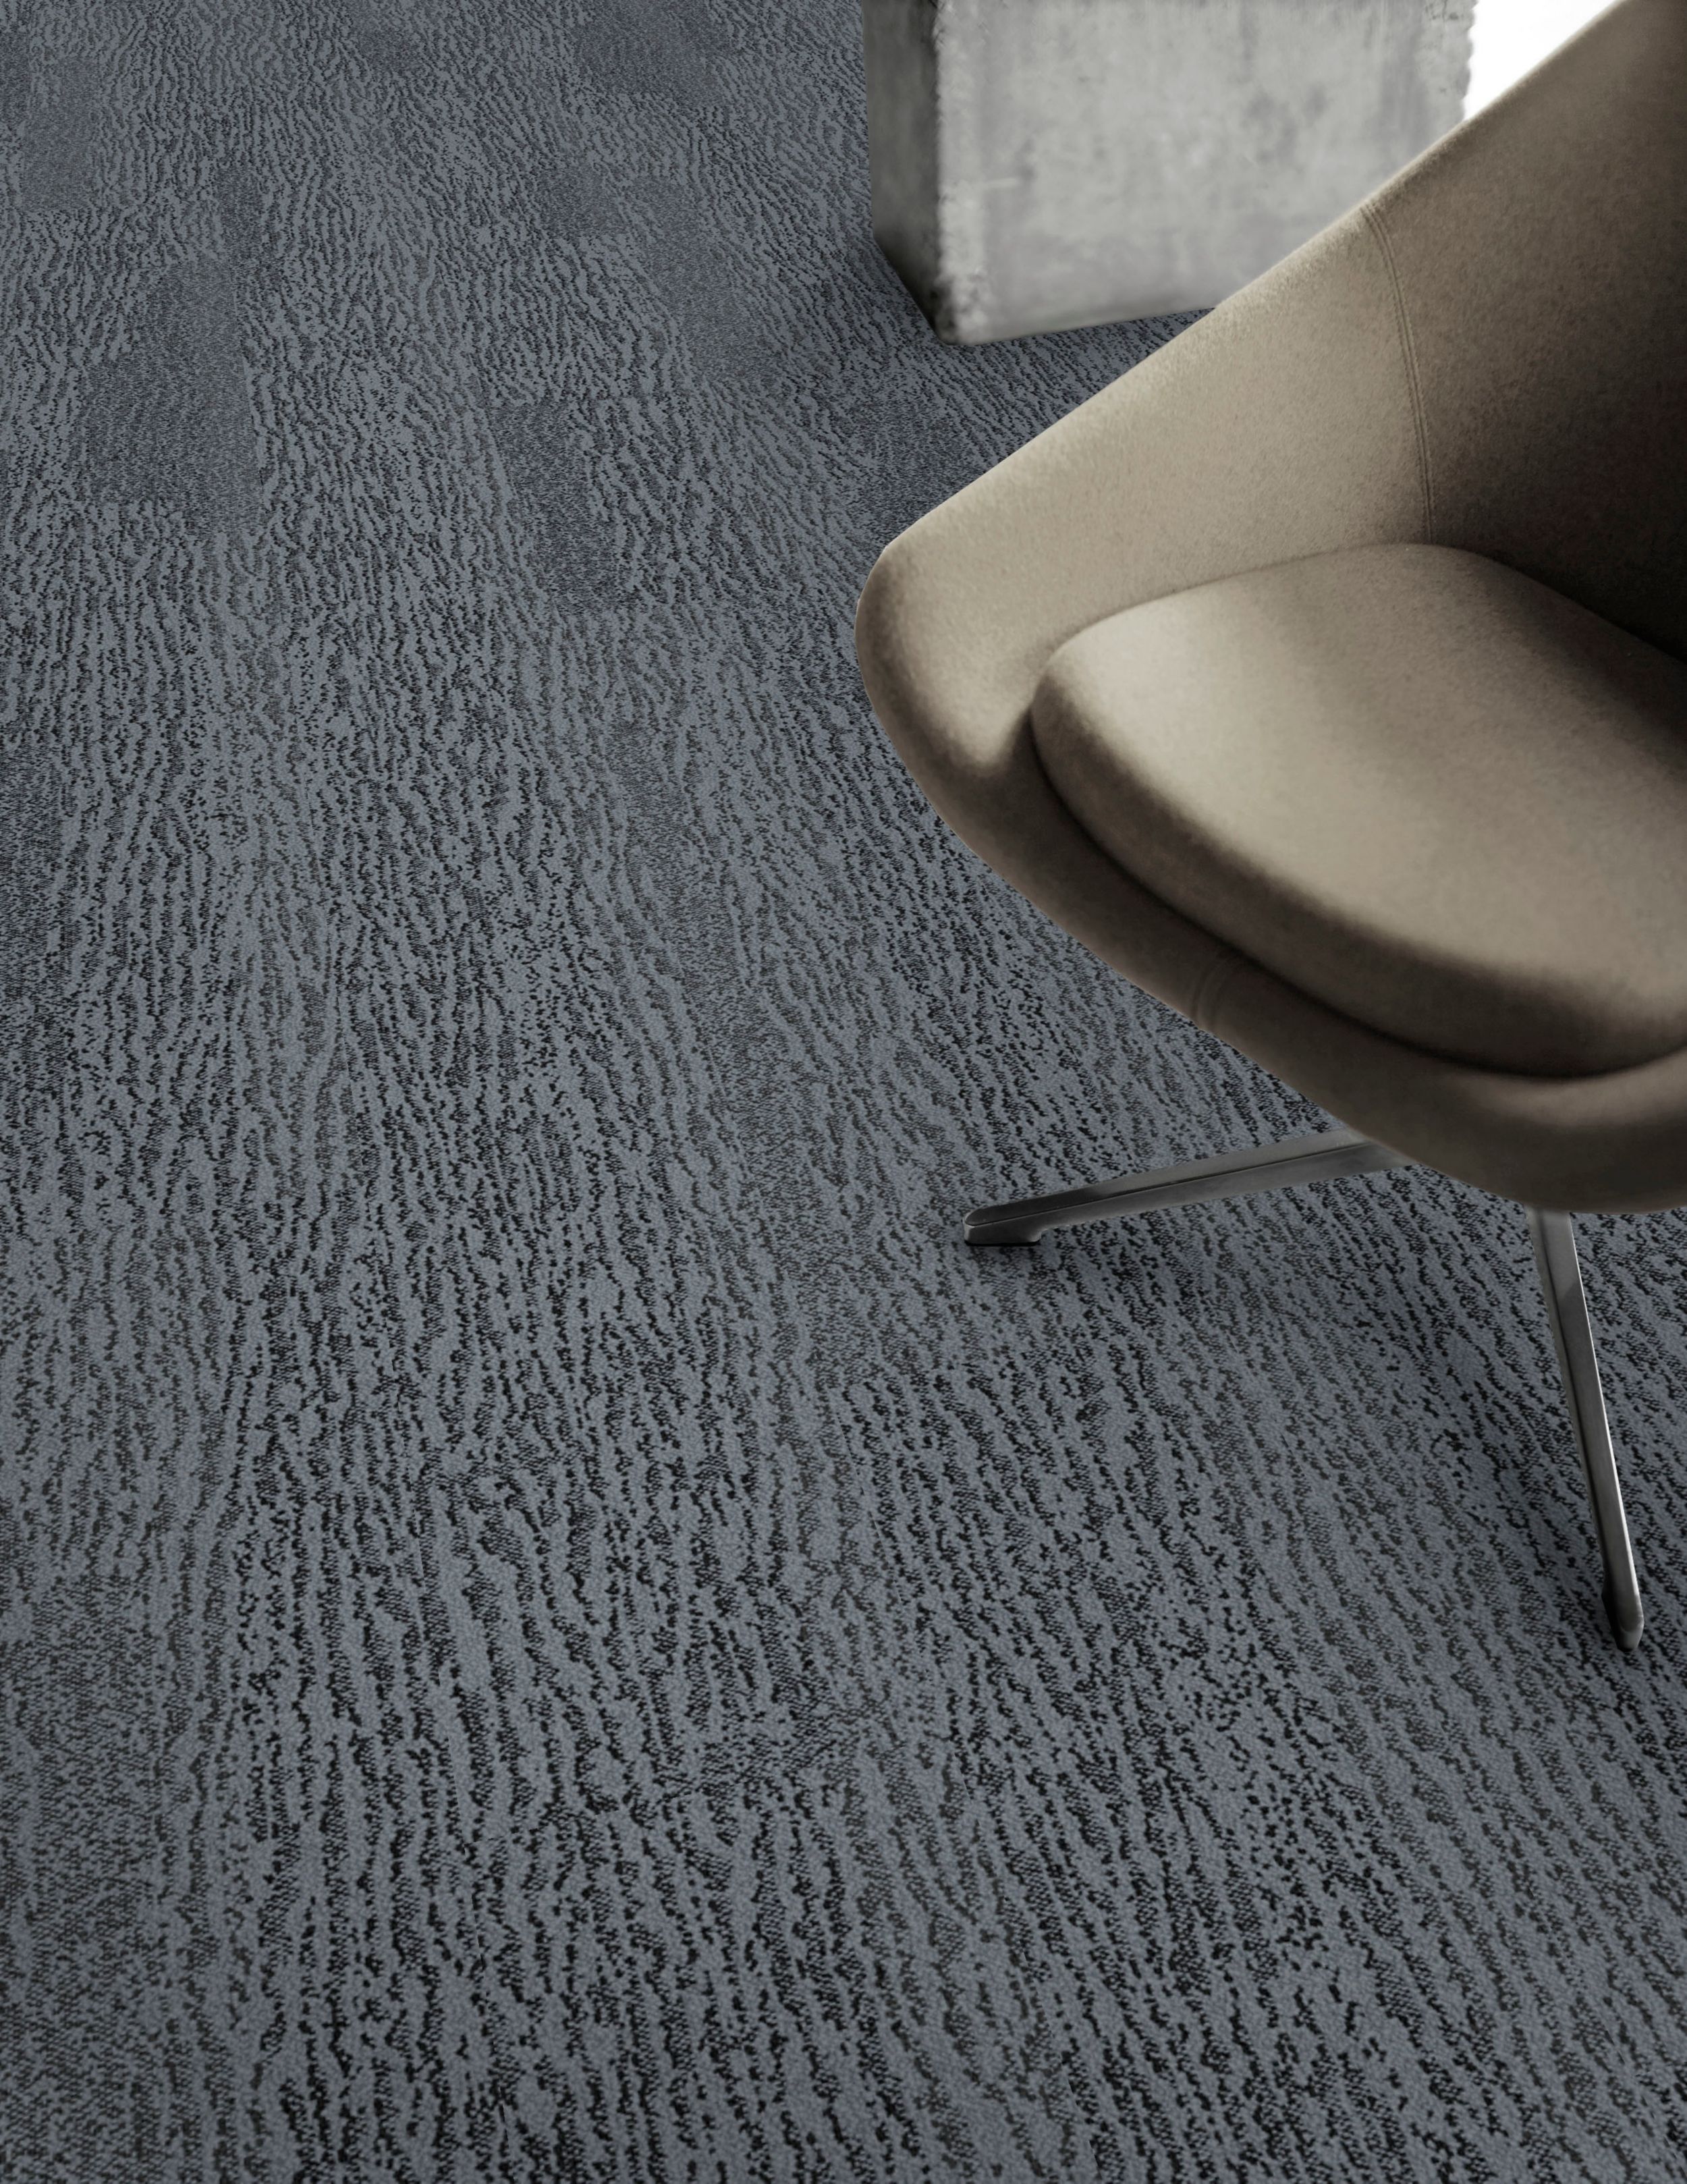 Detail of Interface Velvet Bark carpet tile with chair imagen número 3